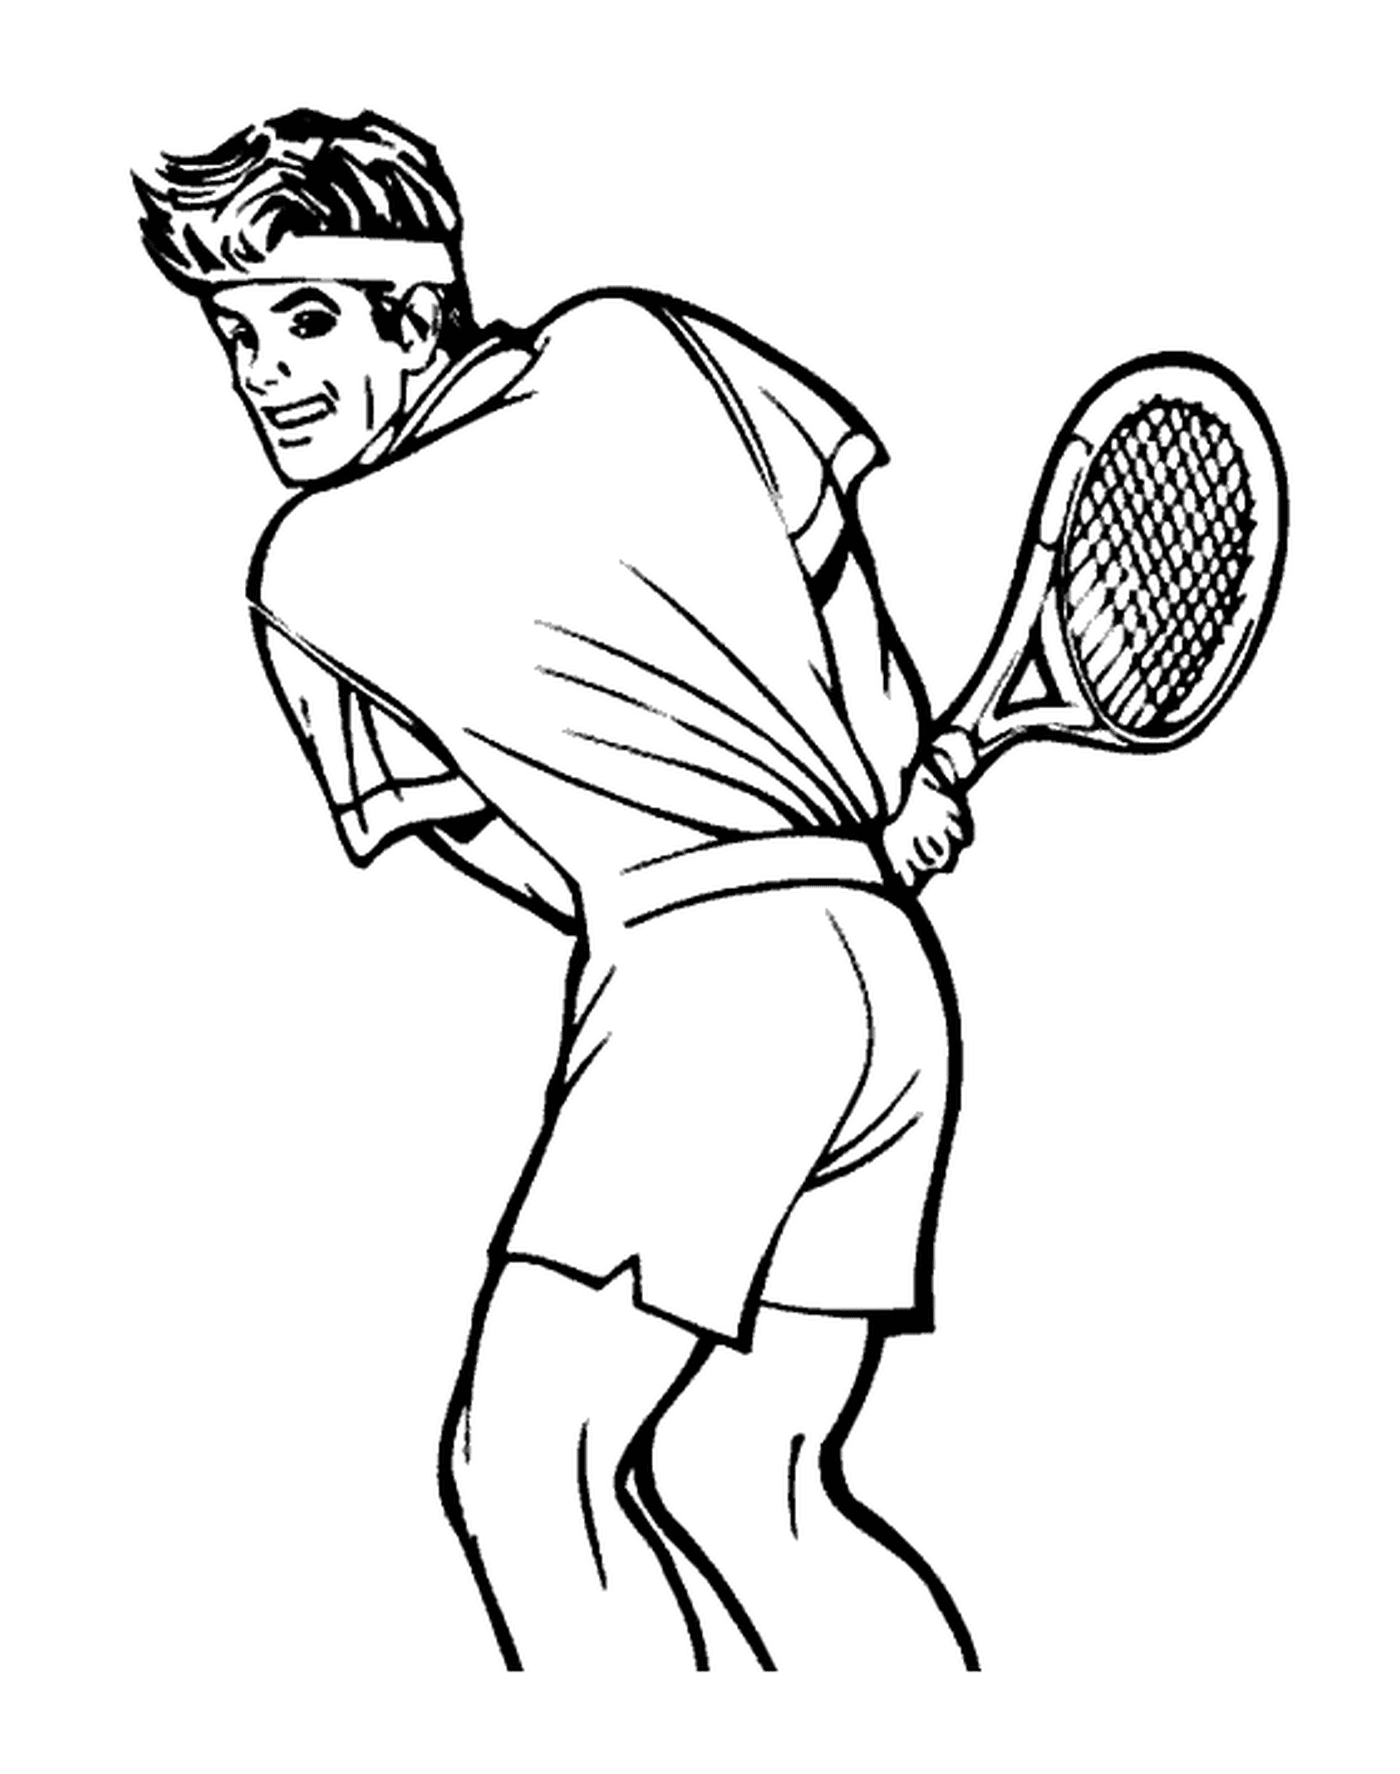  Ein Tennisspieler auf dem Platz 